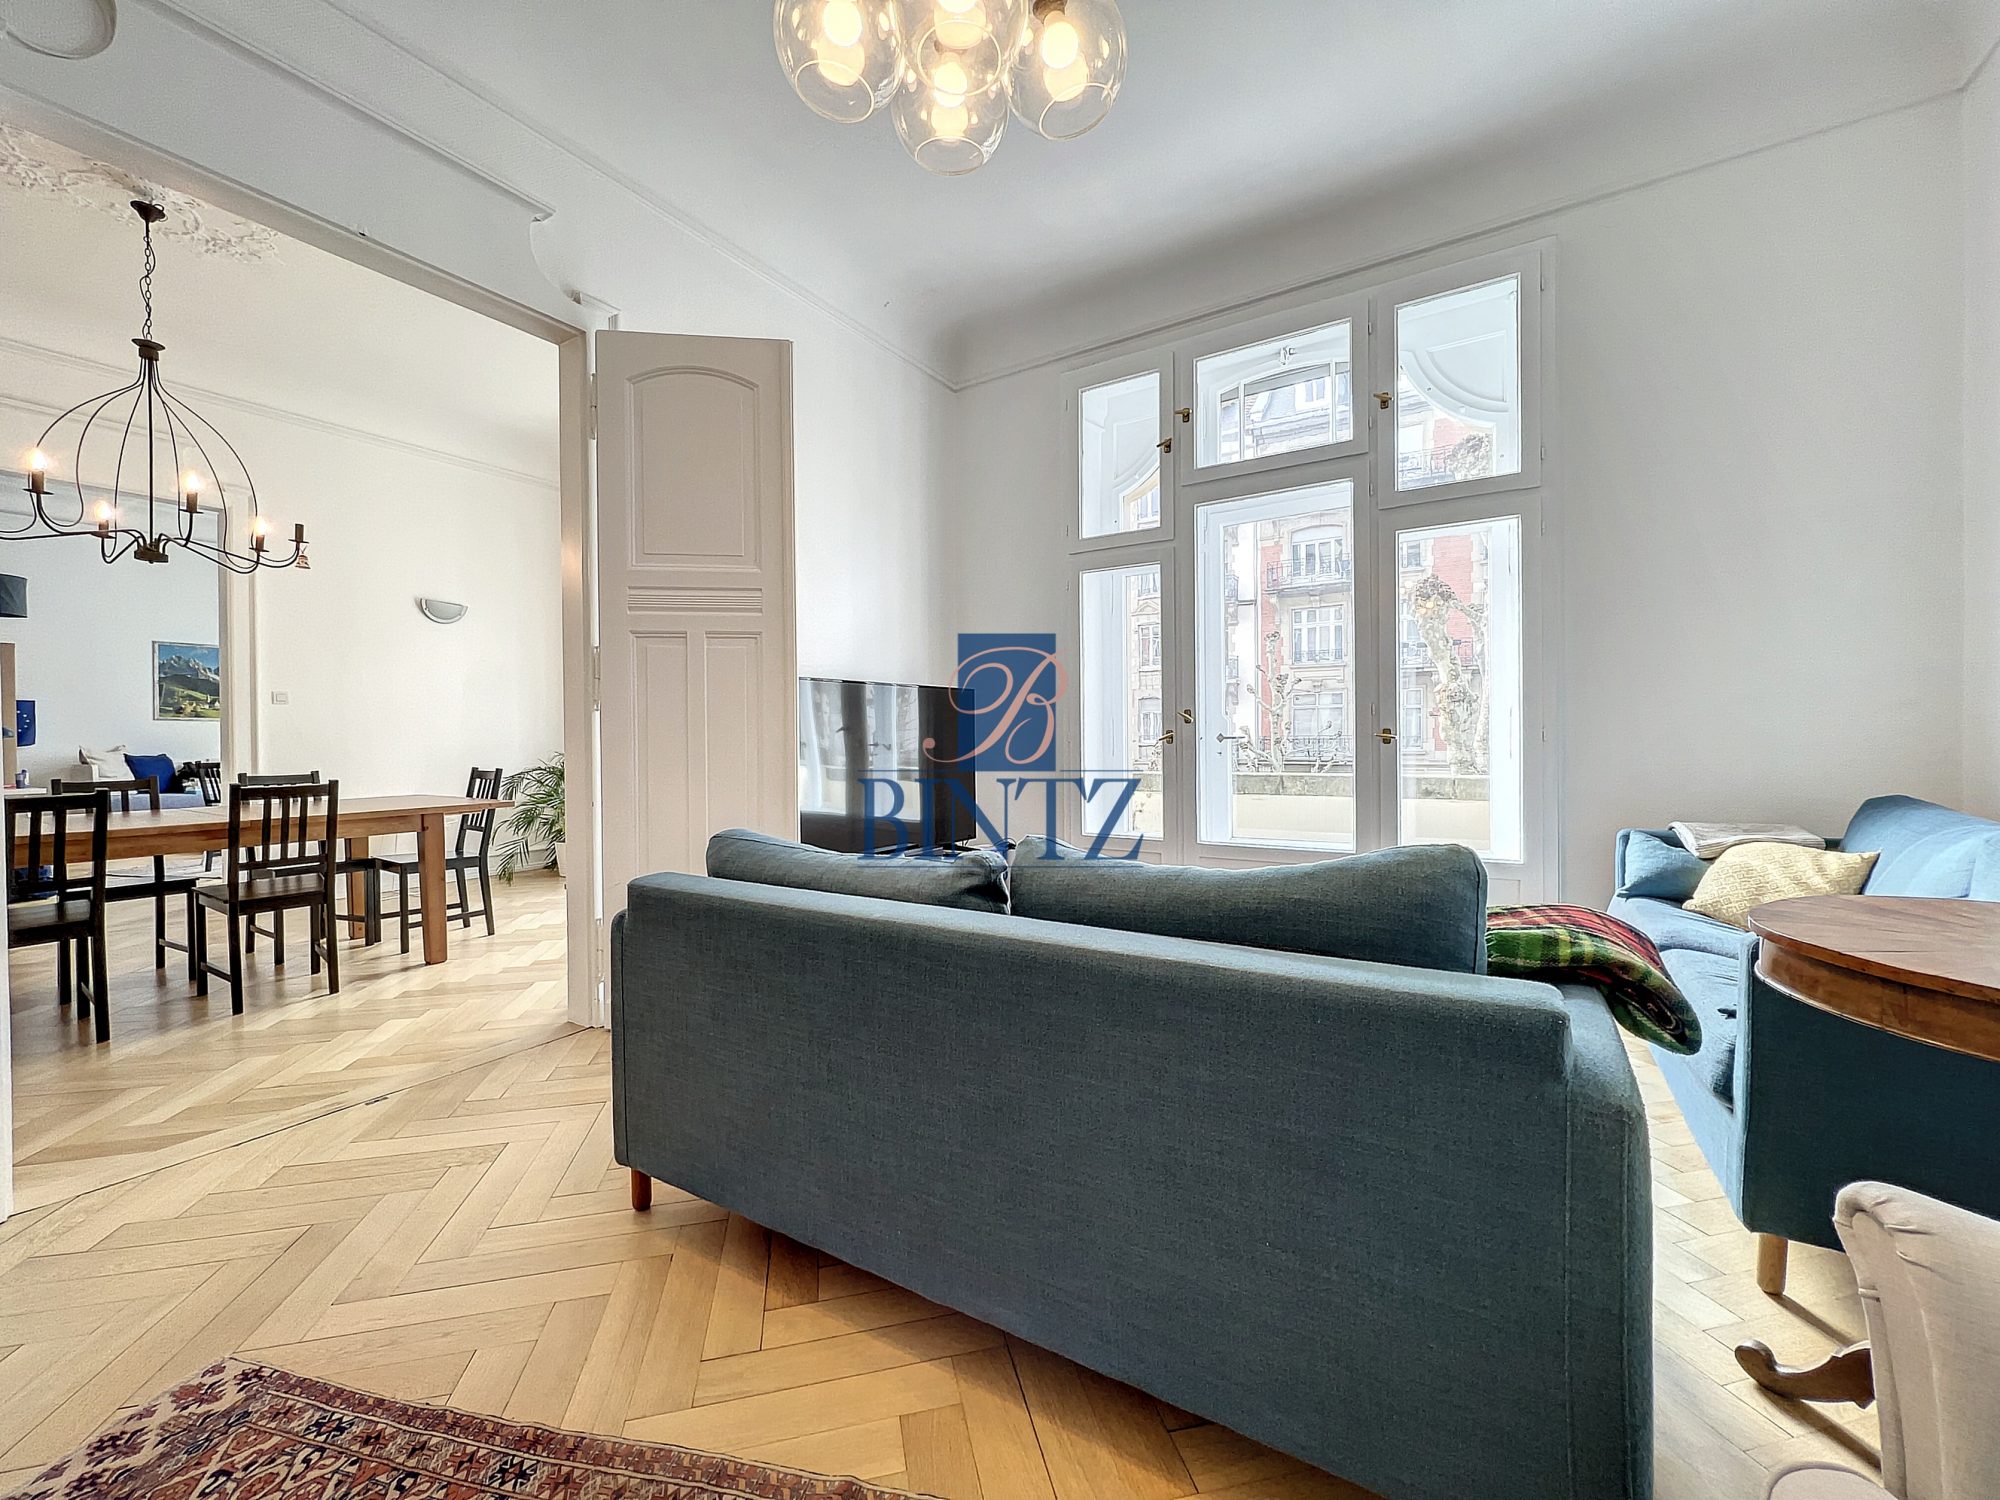 Exceptionnel 5 pièces avec balcon - location appartement Strasbourg - Bintz Immobilier - 2